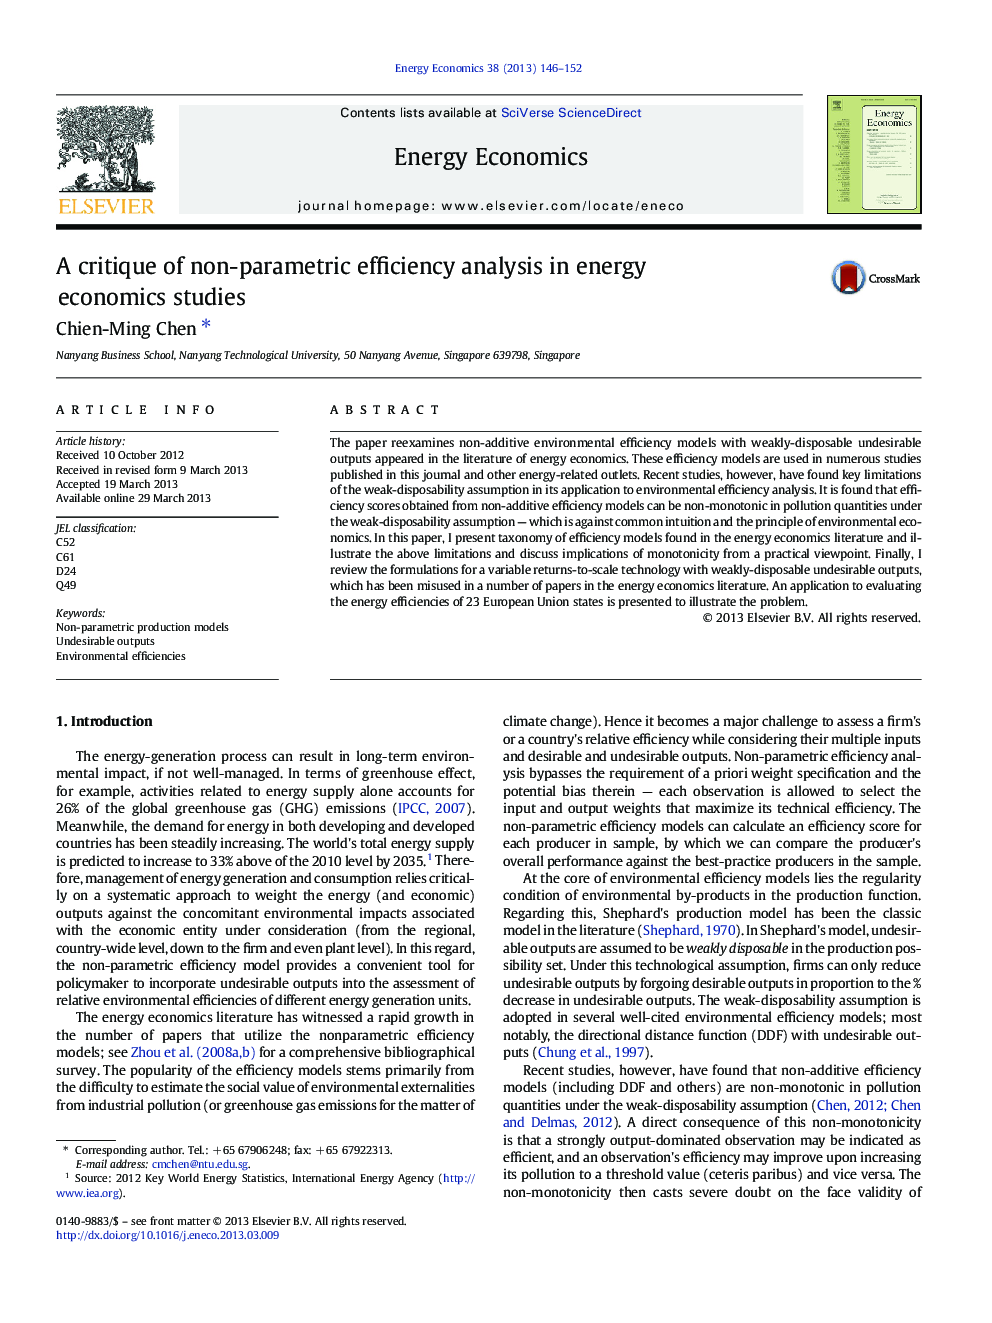 نقد تحلیل راندمان غیر پارامتریک در مطالعات اقتصاد انرژی 